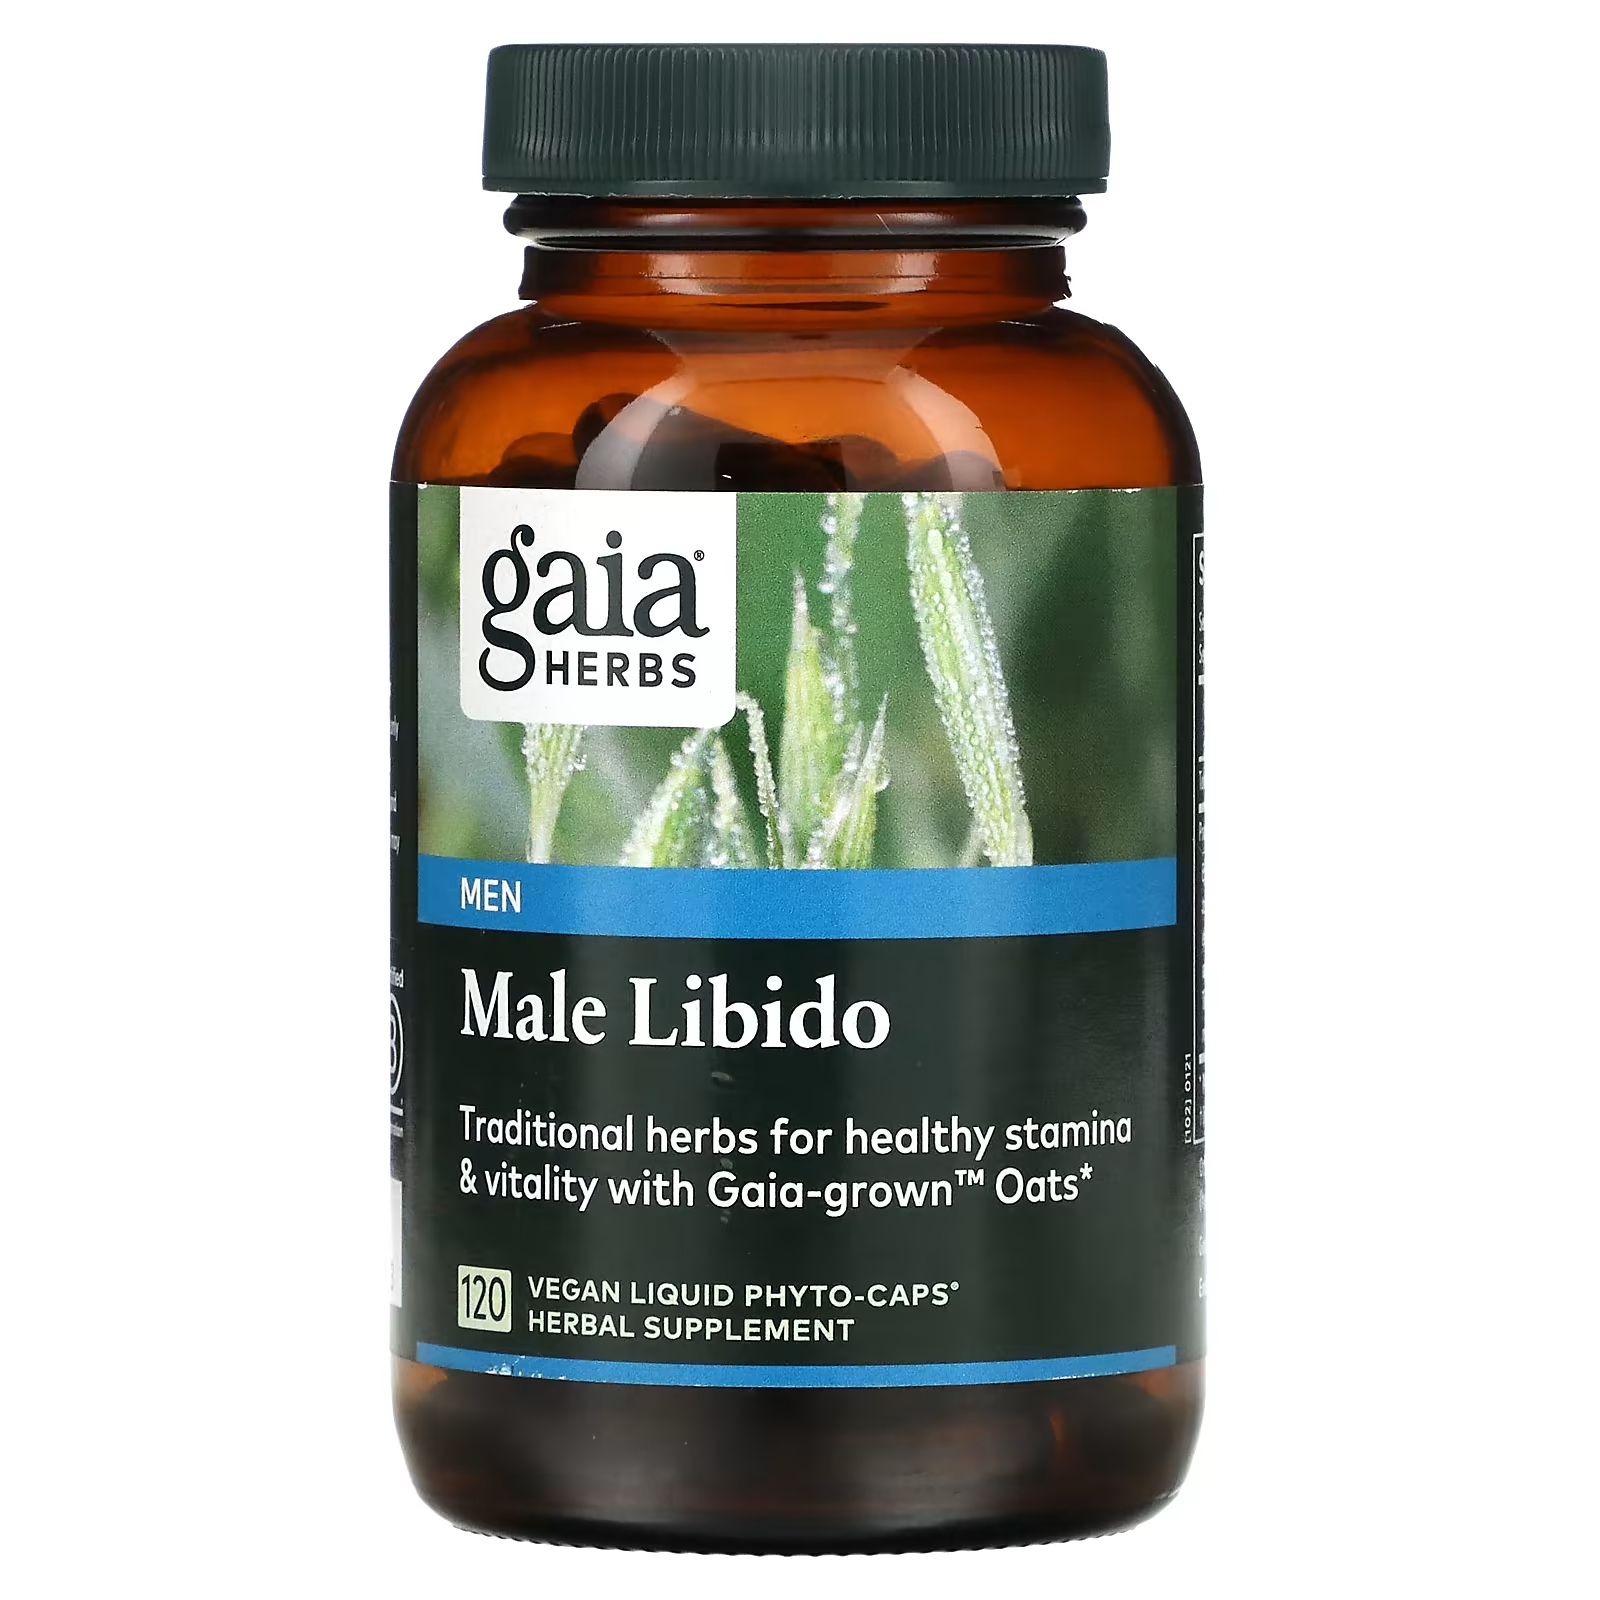 Травяная добавка Gaia Herbs Male Libido, 120 жидких фито-капсул цена и фото